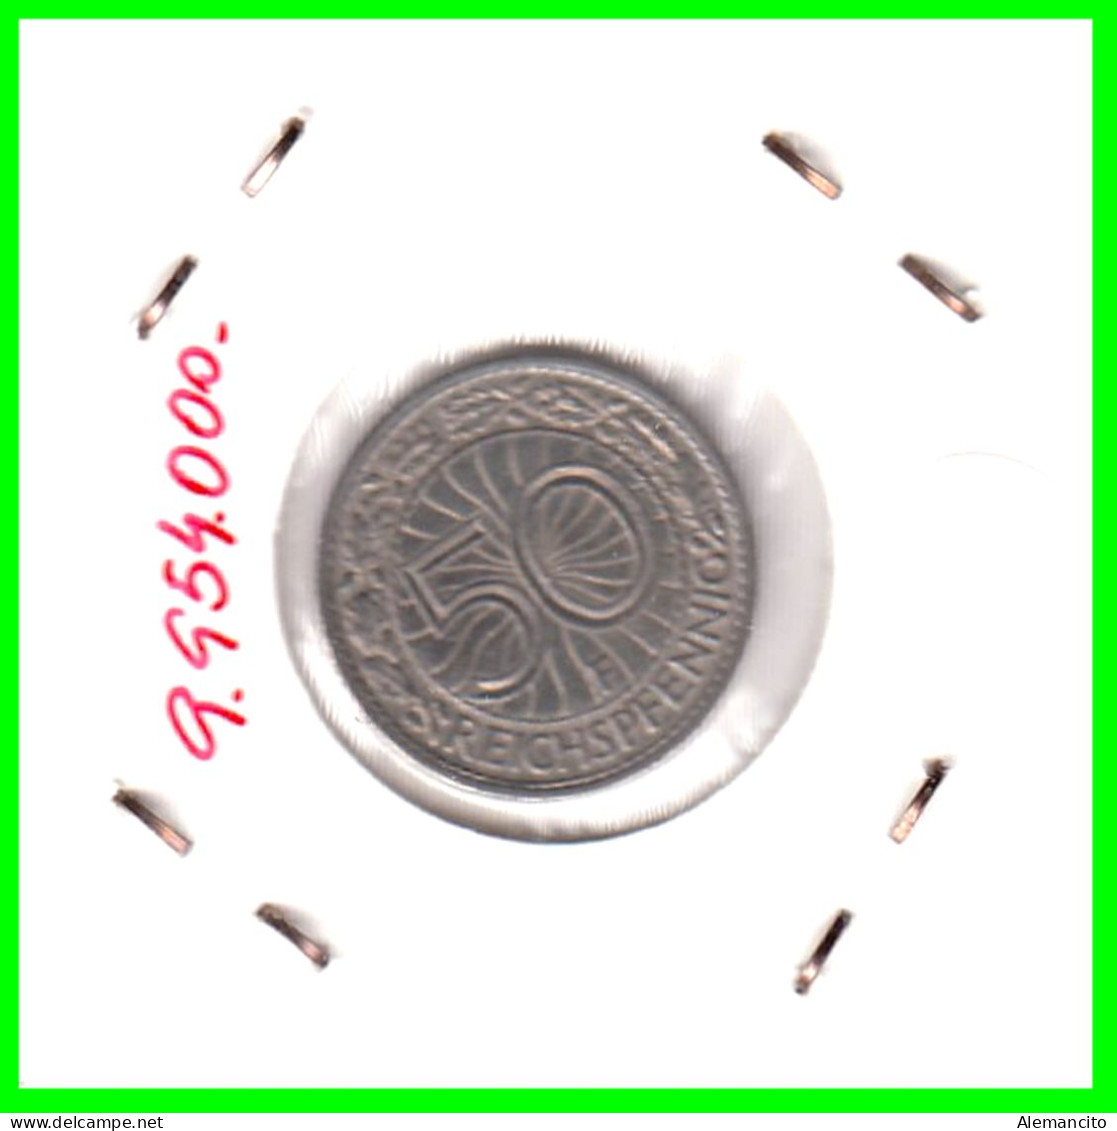 GERMANY REPÚBLICA DE WEIMAR 50 REICHSPFENNIG ( 1928 CECA - F )  (REICHSPFENNIG KM # 40 - 50 Rentenpfennig & 50 Reichspfennig